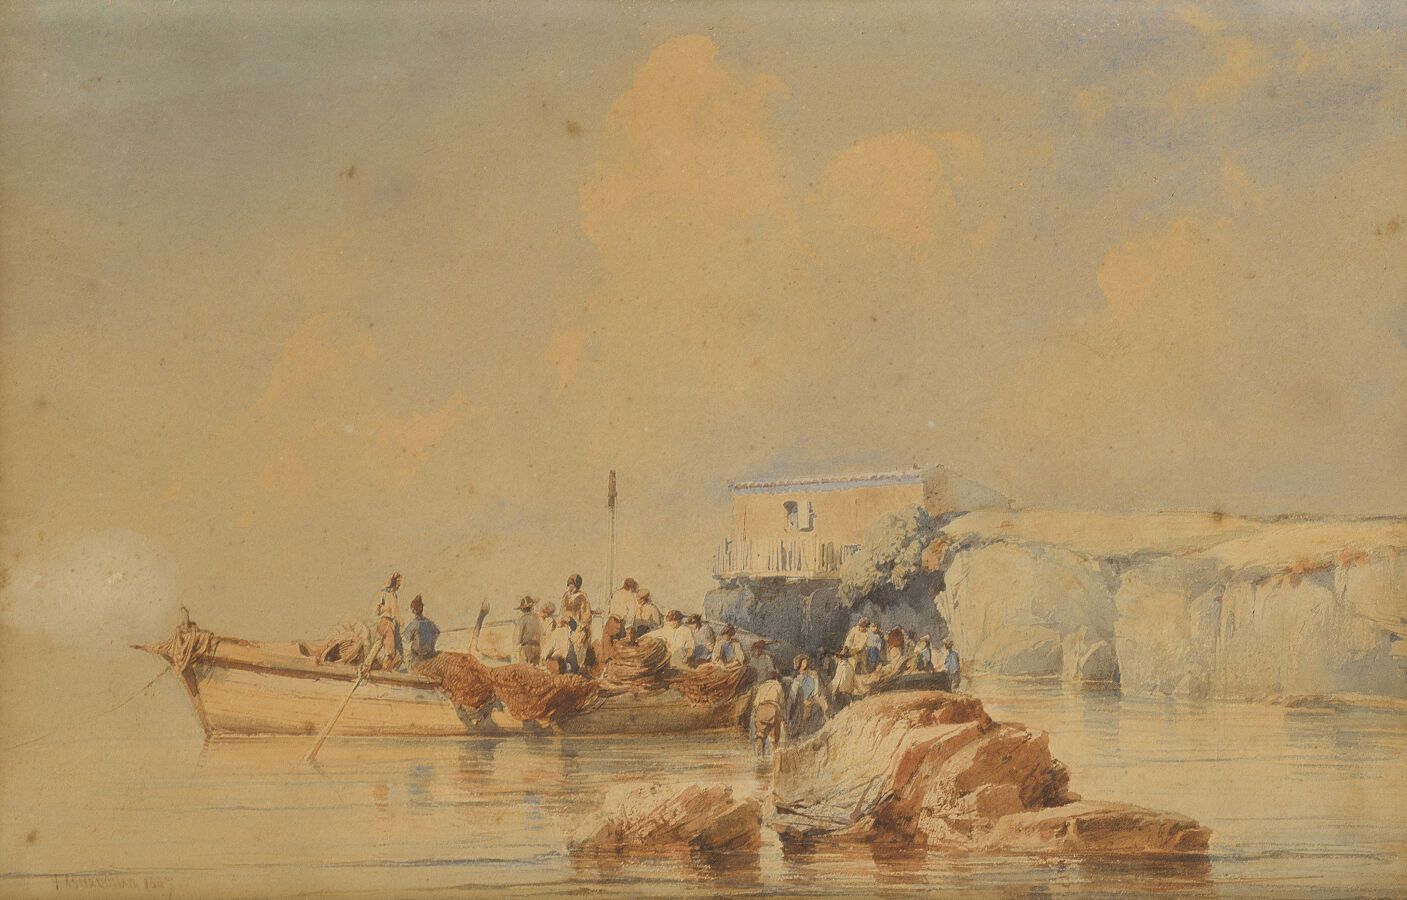 Null Vincent COURDOUA N (1810-1893)

El regreso de los pescadores

Acuarela, fir&hellip;